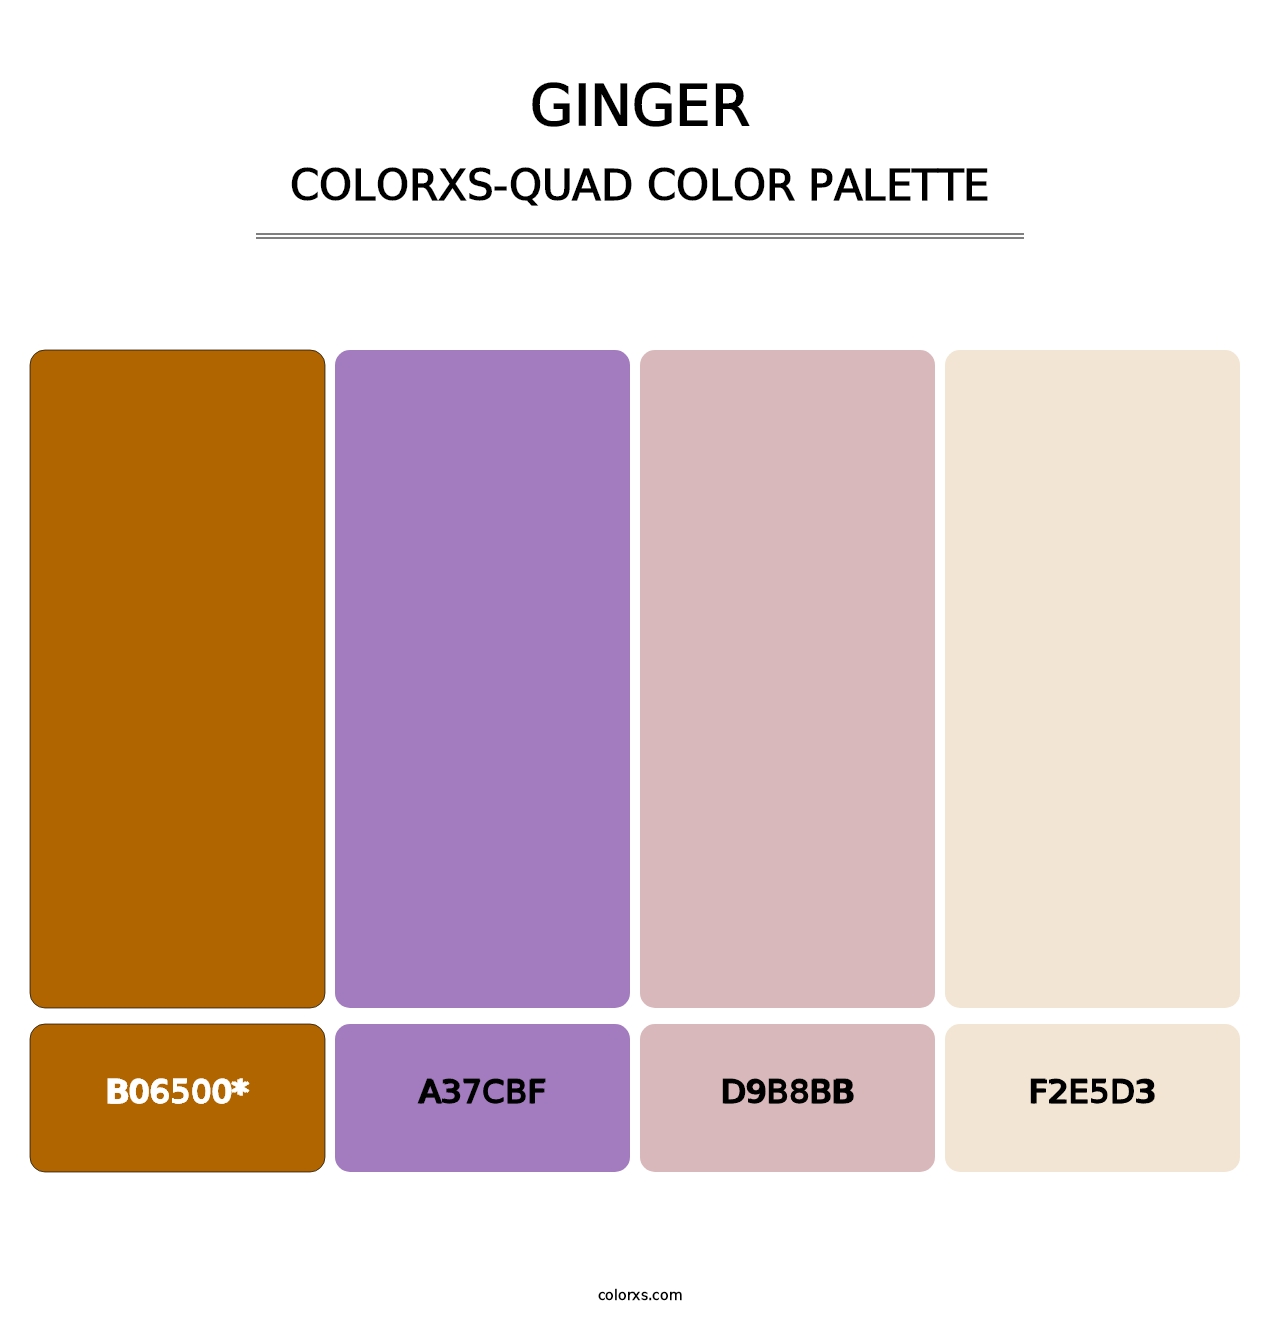 Ginger - Colorxs Quad Palette